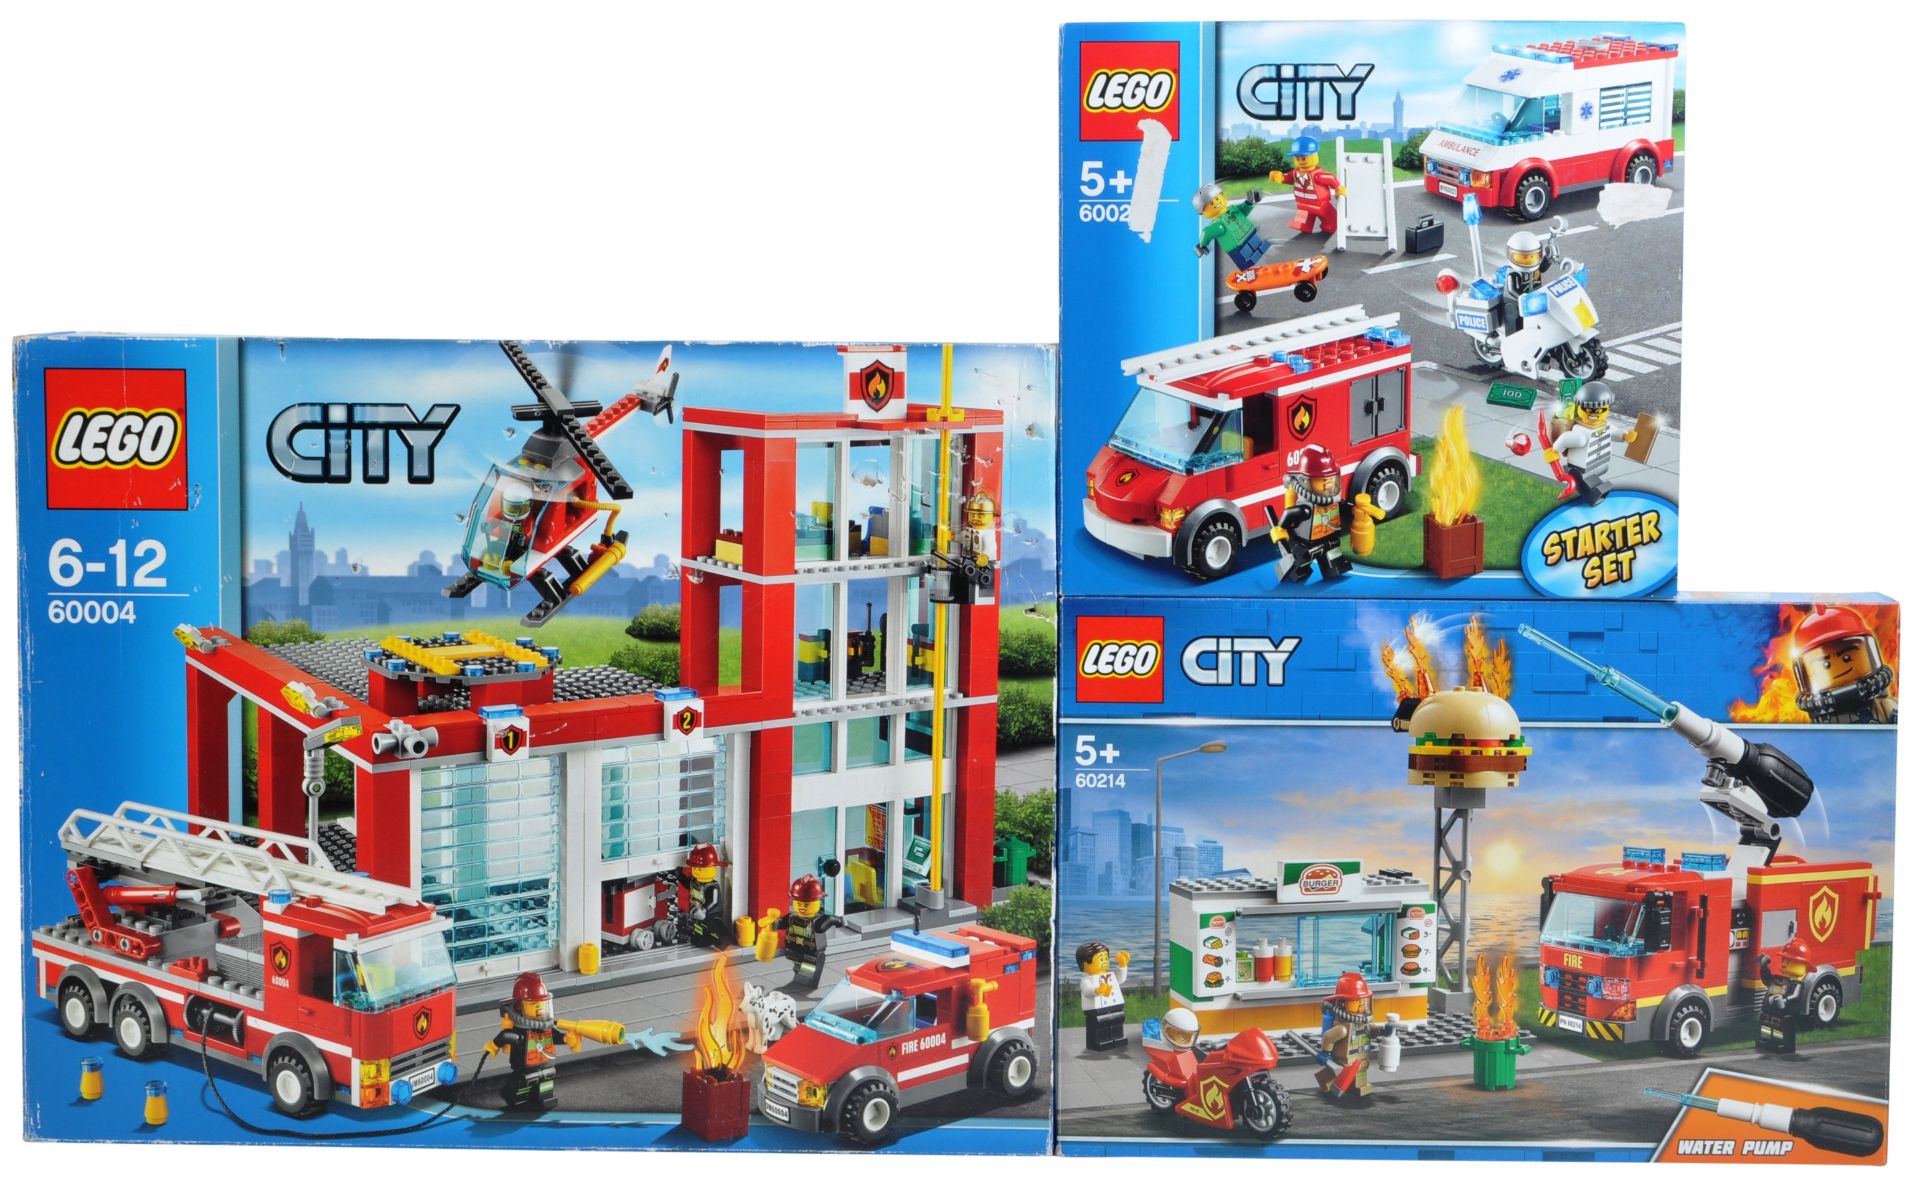 LEGO SETS - LEGO CITY - 60004 / 60214 / 60023